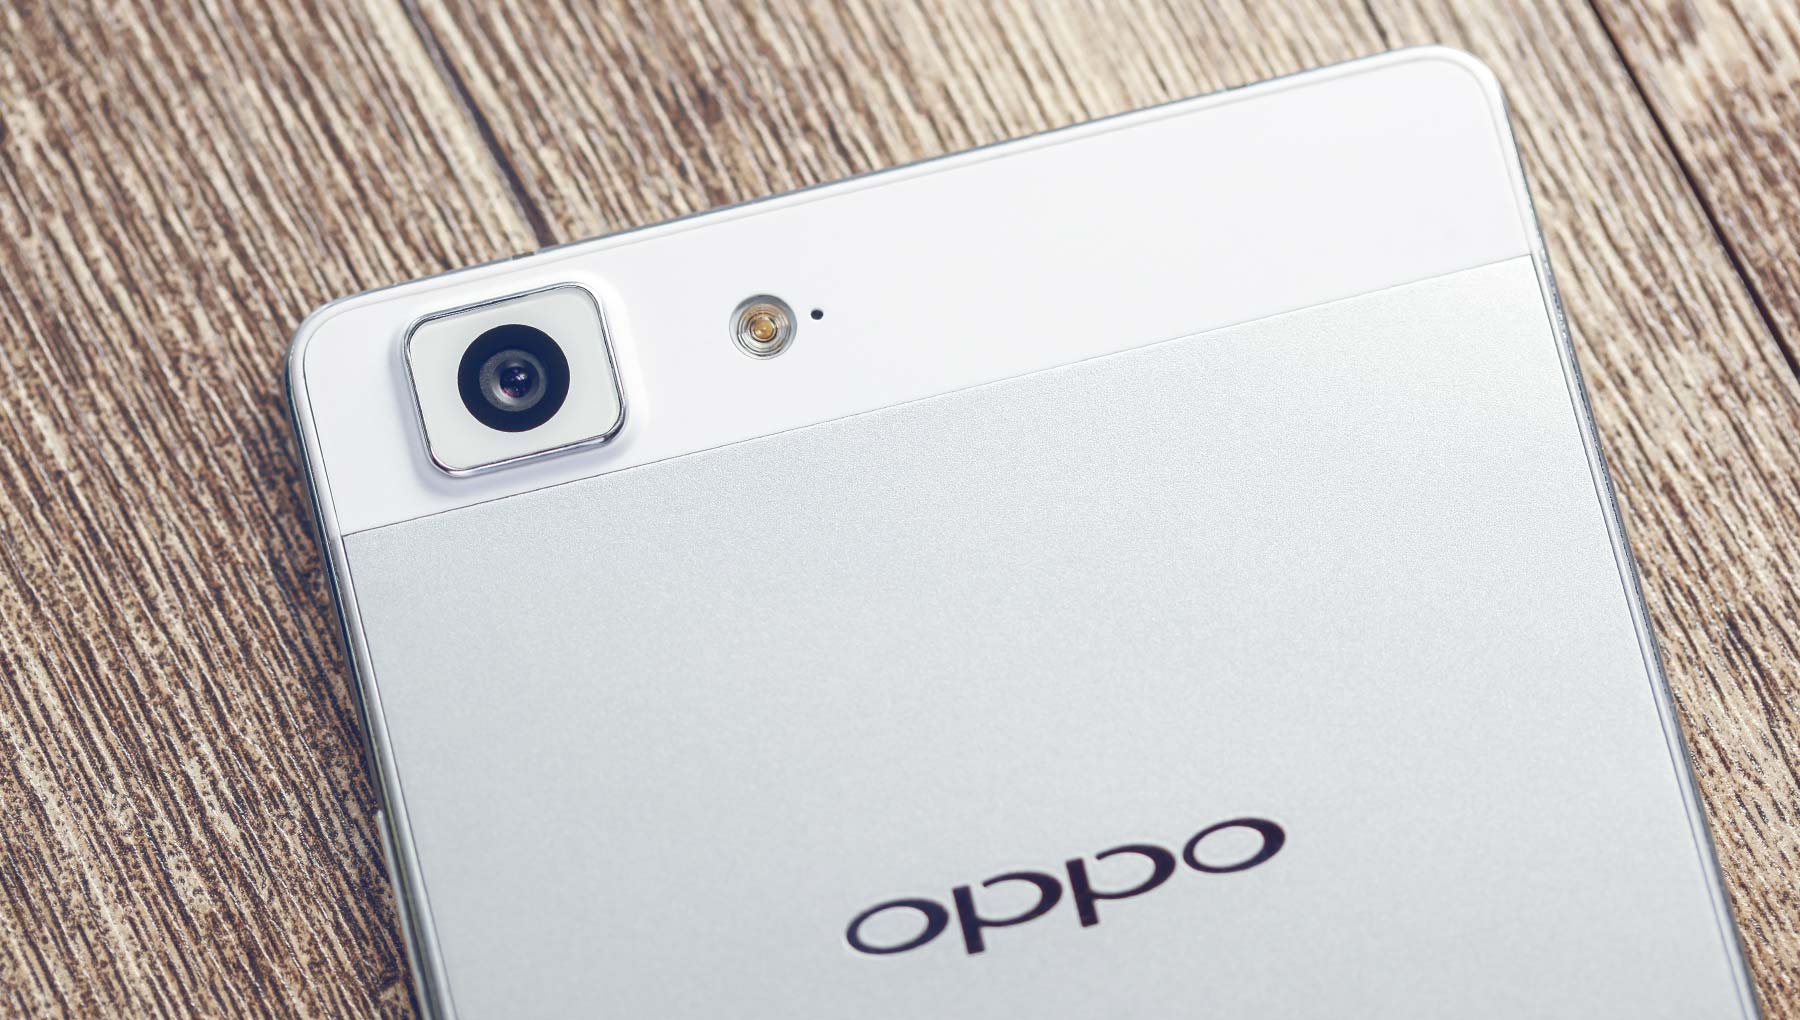 Kein Wachstum im Smartphone-Markt, Oppo und Vivo neu in Top 5